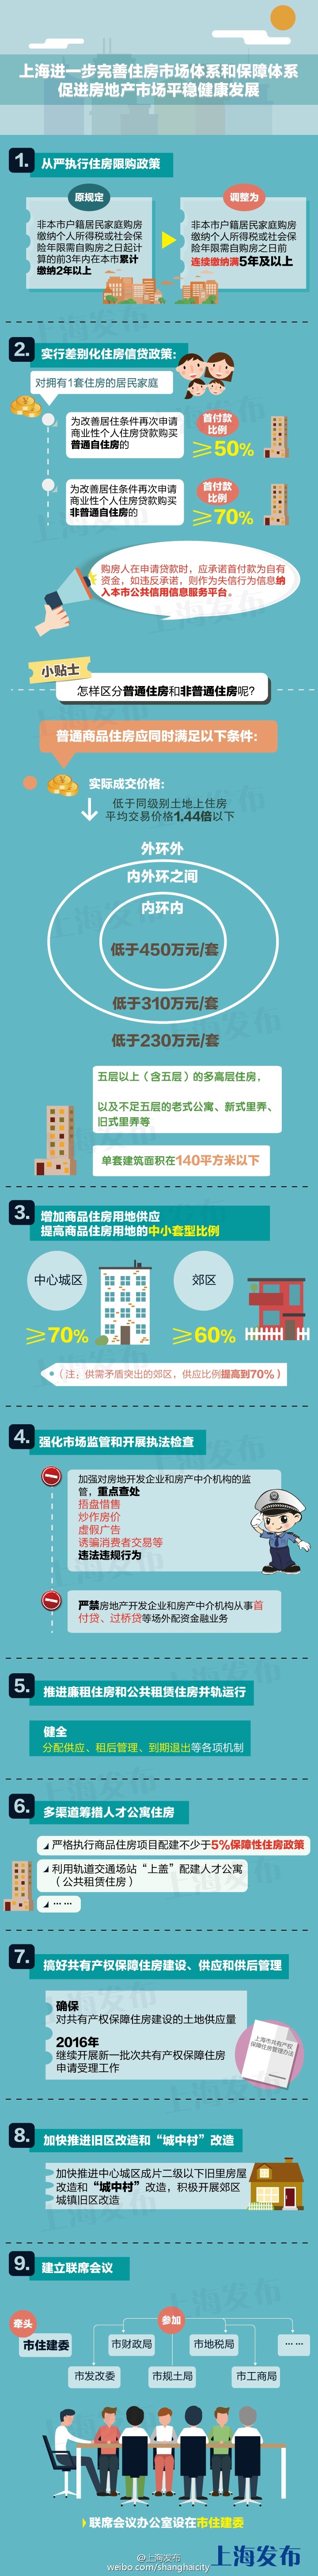 一张图看懂上海楼市新政